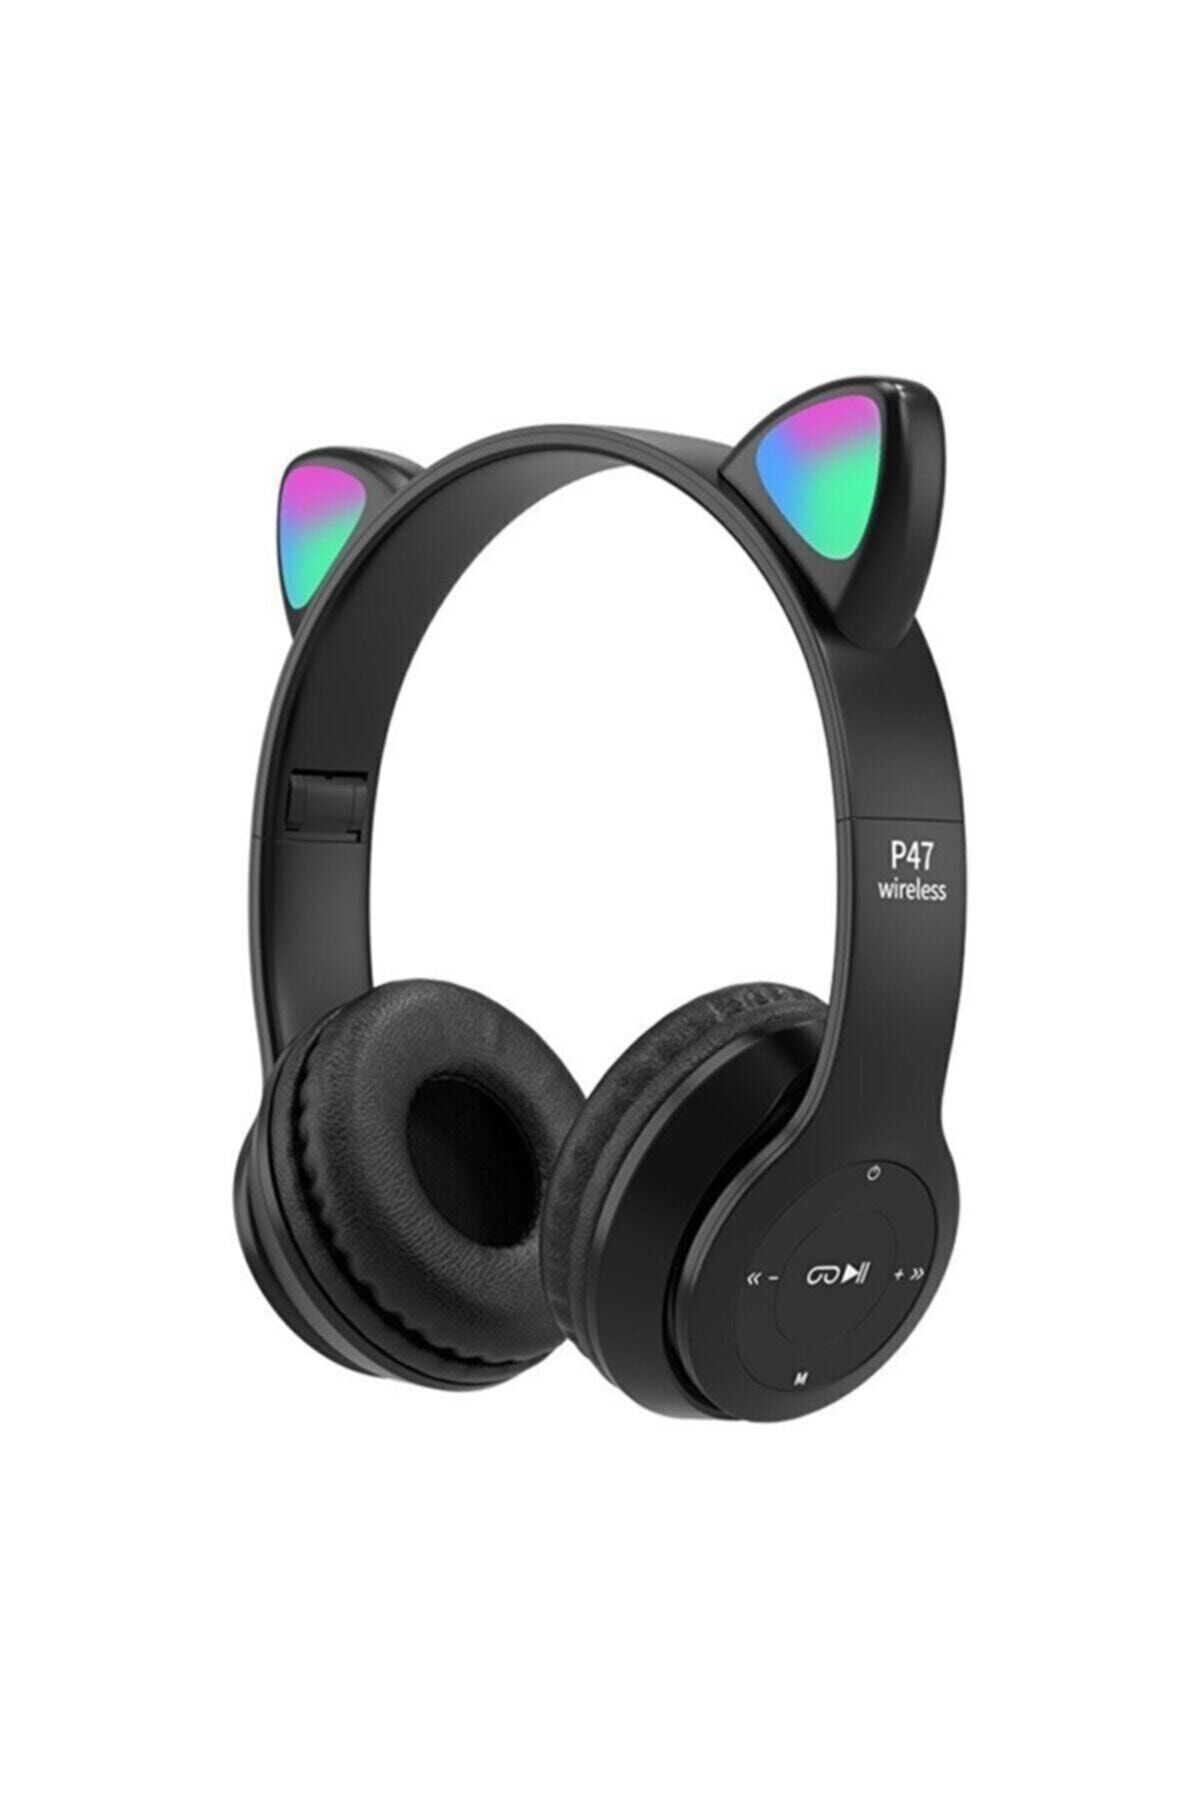 Anyplus P47m Işıklı Bluetooth Kulaklık 5.0 Kablosuz Katlanabilir Kedili Kulaklık Parti Işıklı Kulaklık Siyah